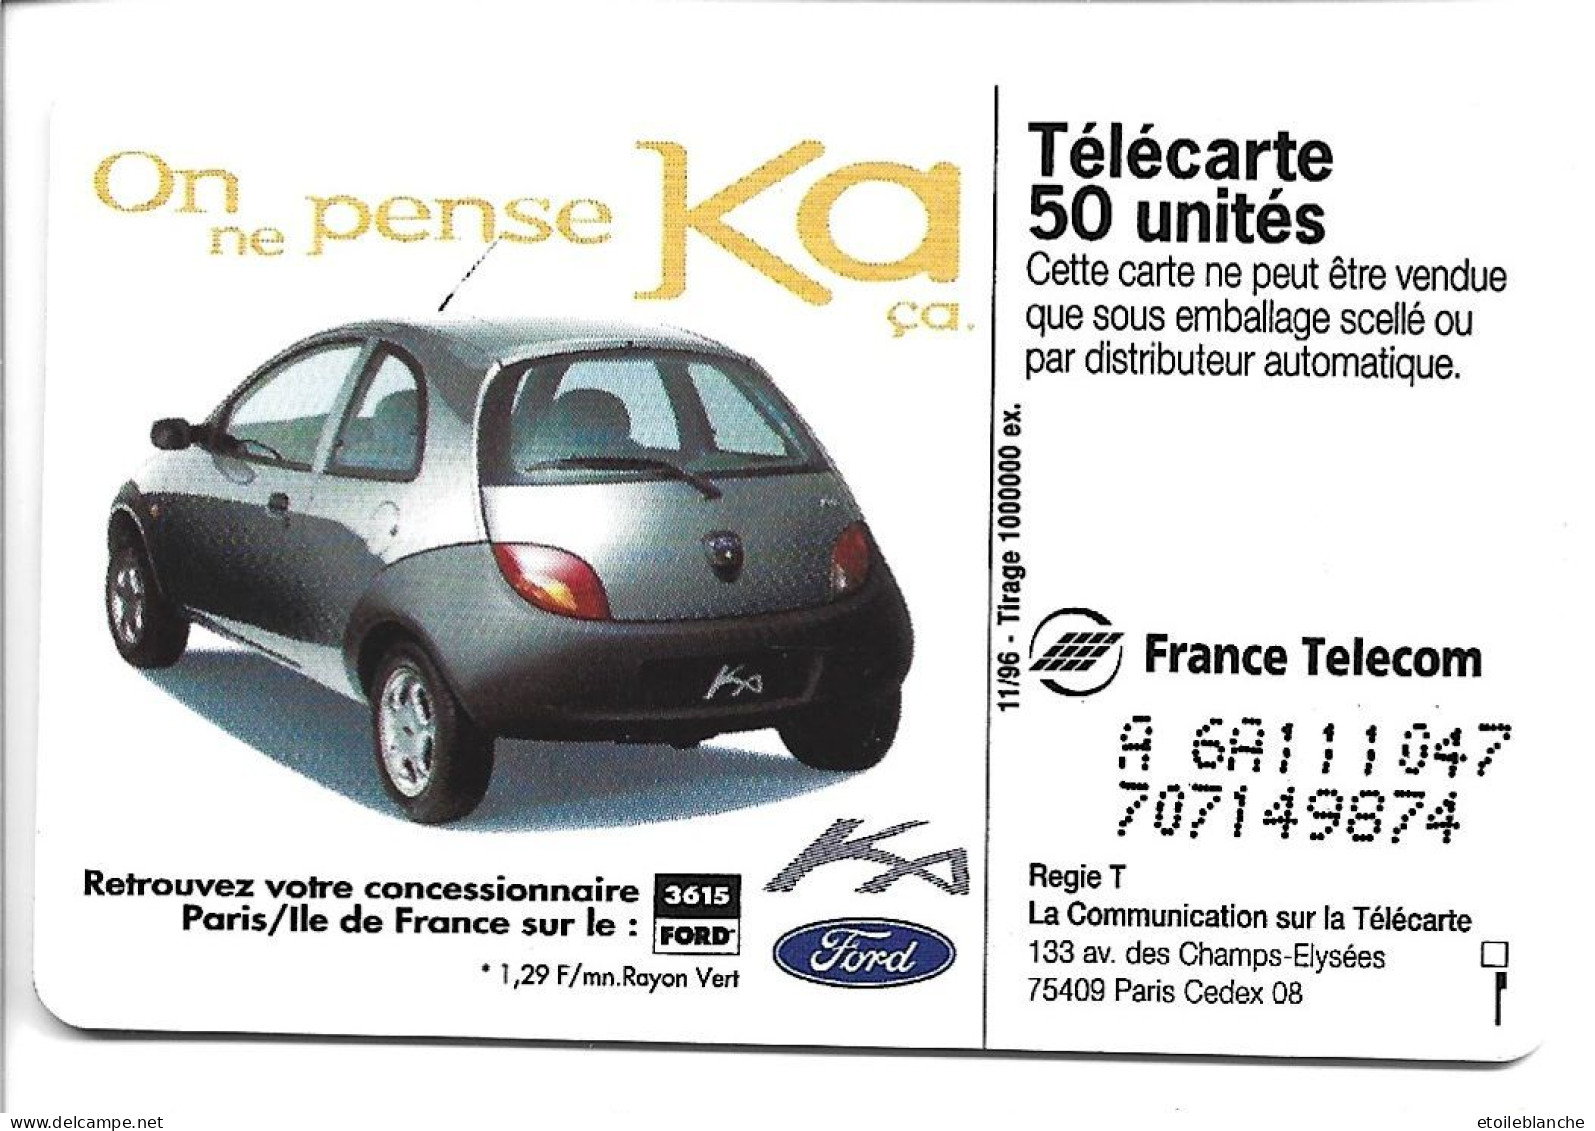 Telecarte Publicité Voiture Ford KA, On Ne Pense Qu'à ça -  Concessionnaire Paris Sur Minitel 3615 Ford - Cars